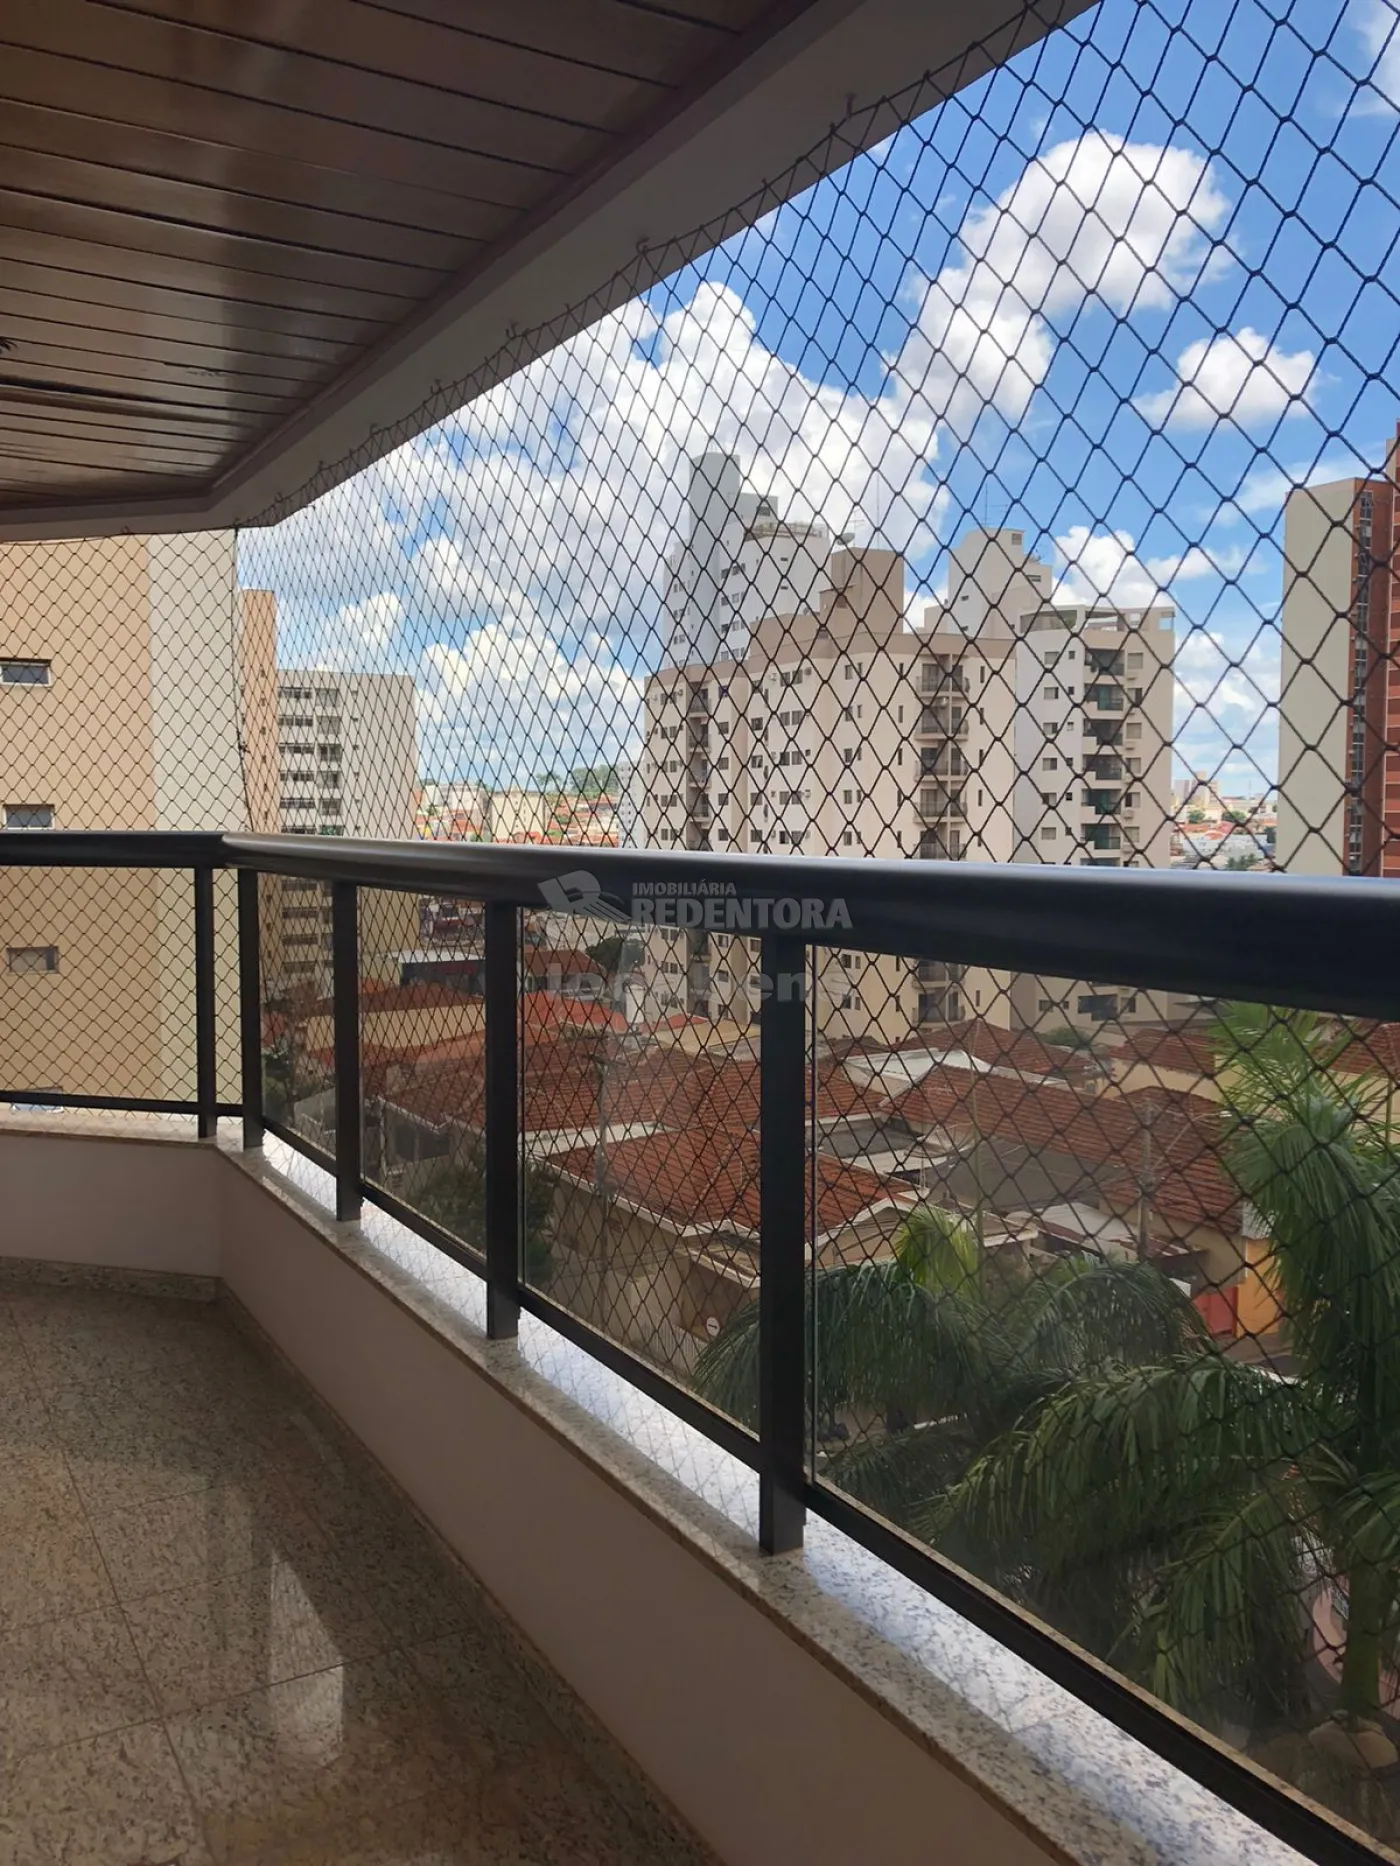 Comprar Apartamento / Padrão em São José do Rio Preto R$ 980.000,00 - Foto 7